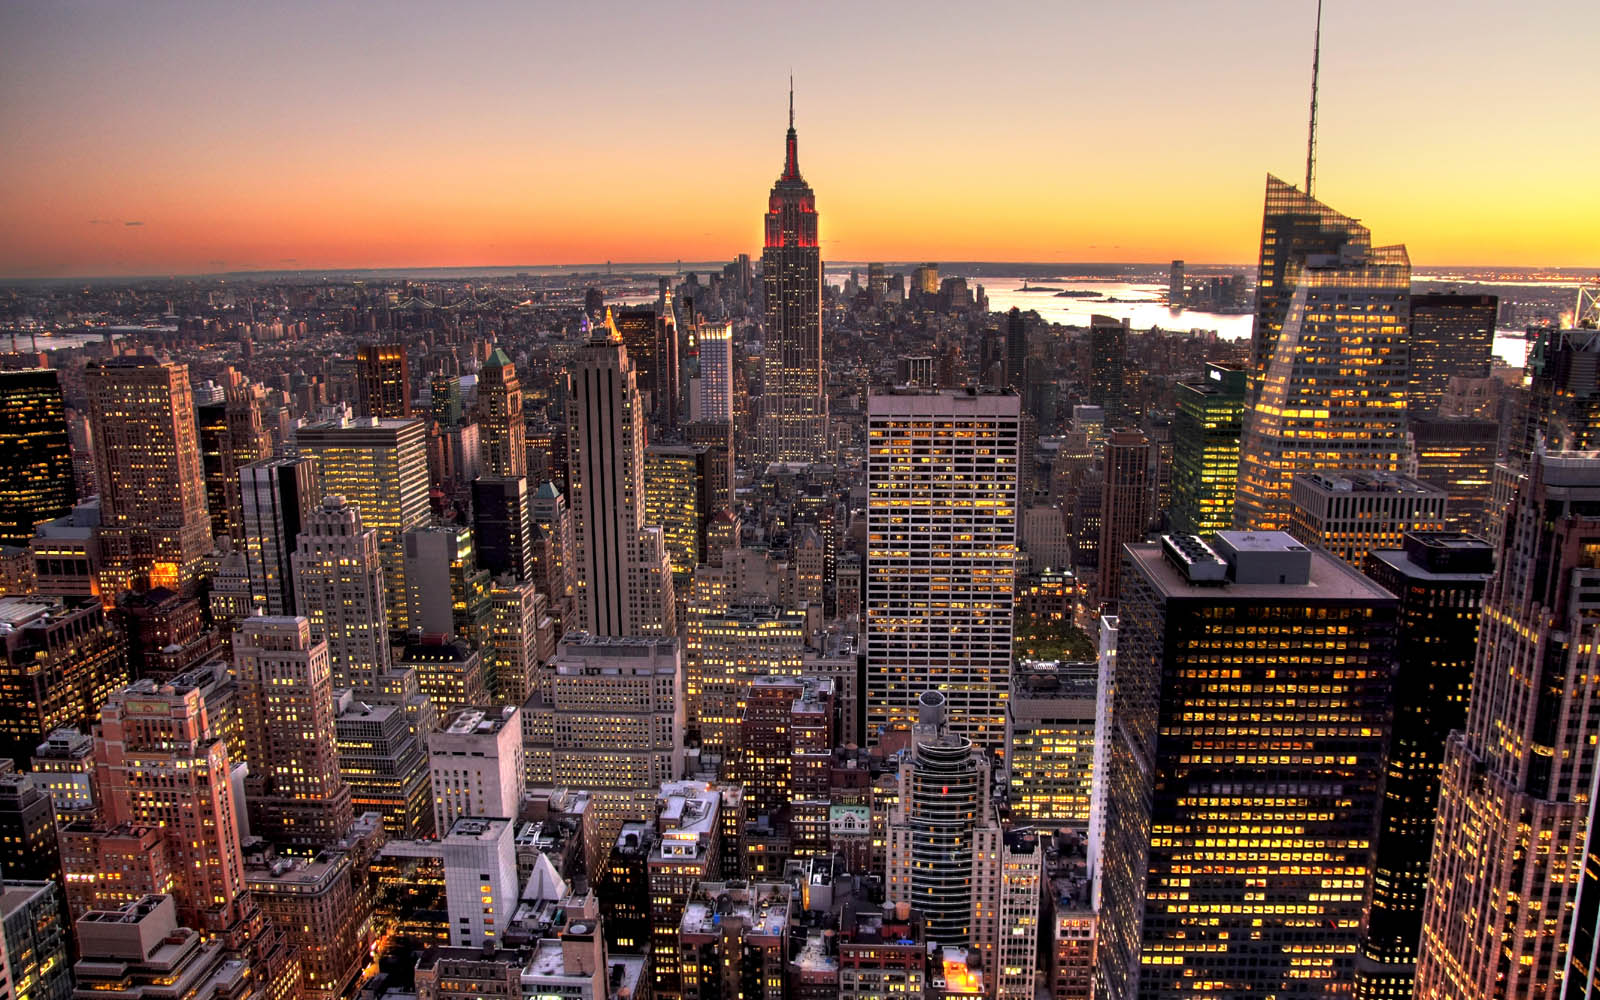 Bộ sưu tập ảnh nền New York đẹp nhất sẽ đem lại cho bạn những khoảnh khắc tuyệt vời với các tòa nhà cao tầng, những con phố đông đúc và sôi động cùng bầu trời xanh kỷ lục. Tận hưởng vẻ đẹp này trên màn hình của mình và cảm nhận sự năng động của thành phố lớn.